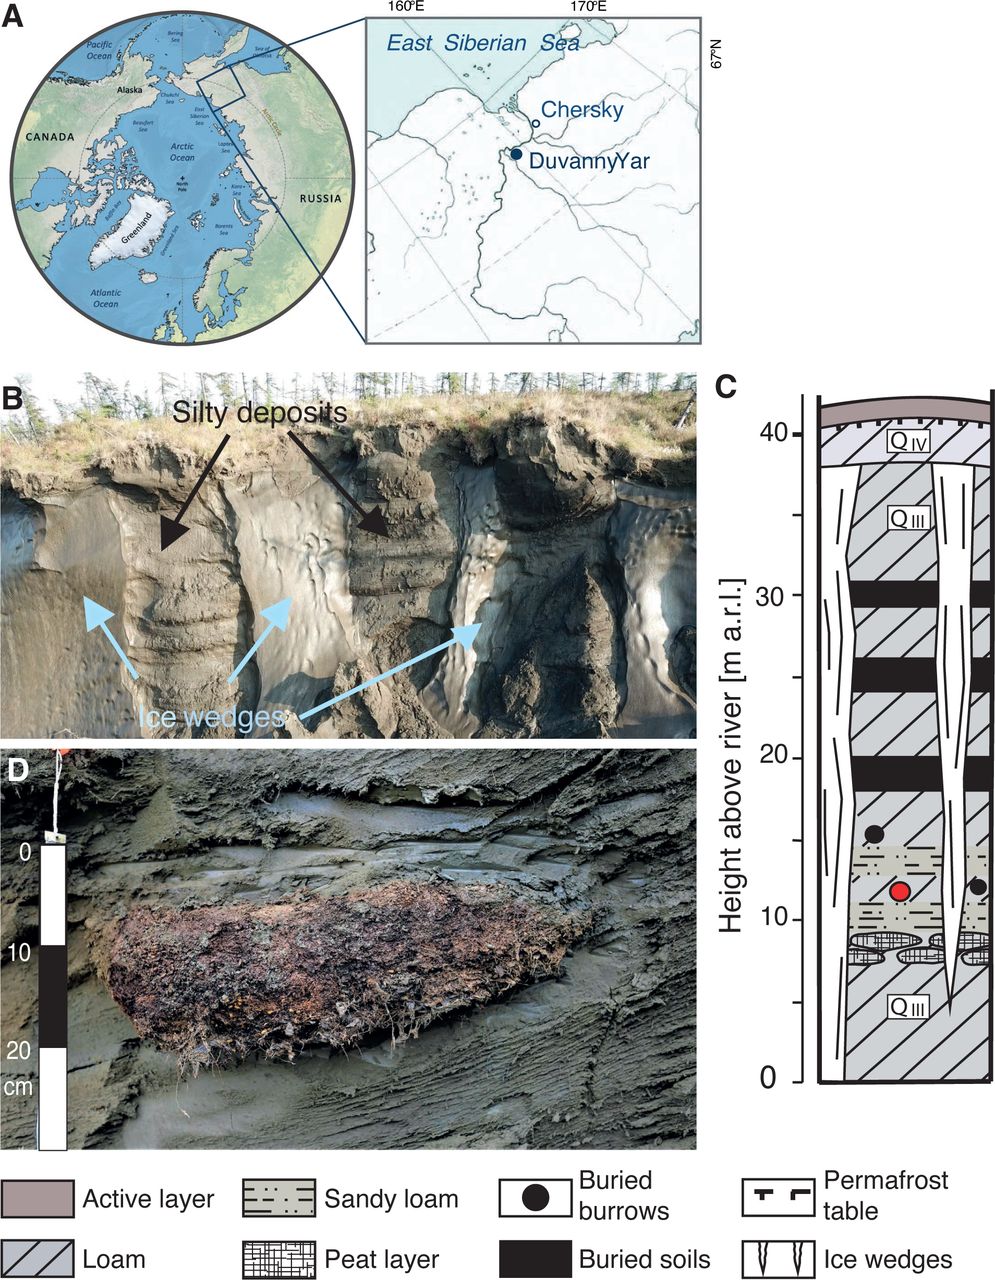 Drevni sibirski crv se vratio u život nakon 46,000 godina i počeo se razmnožavati! 1